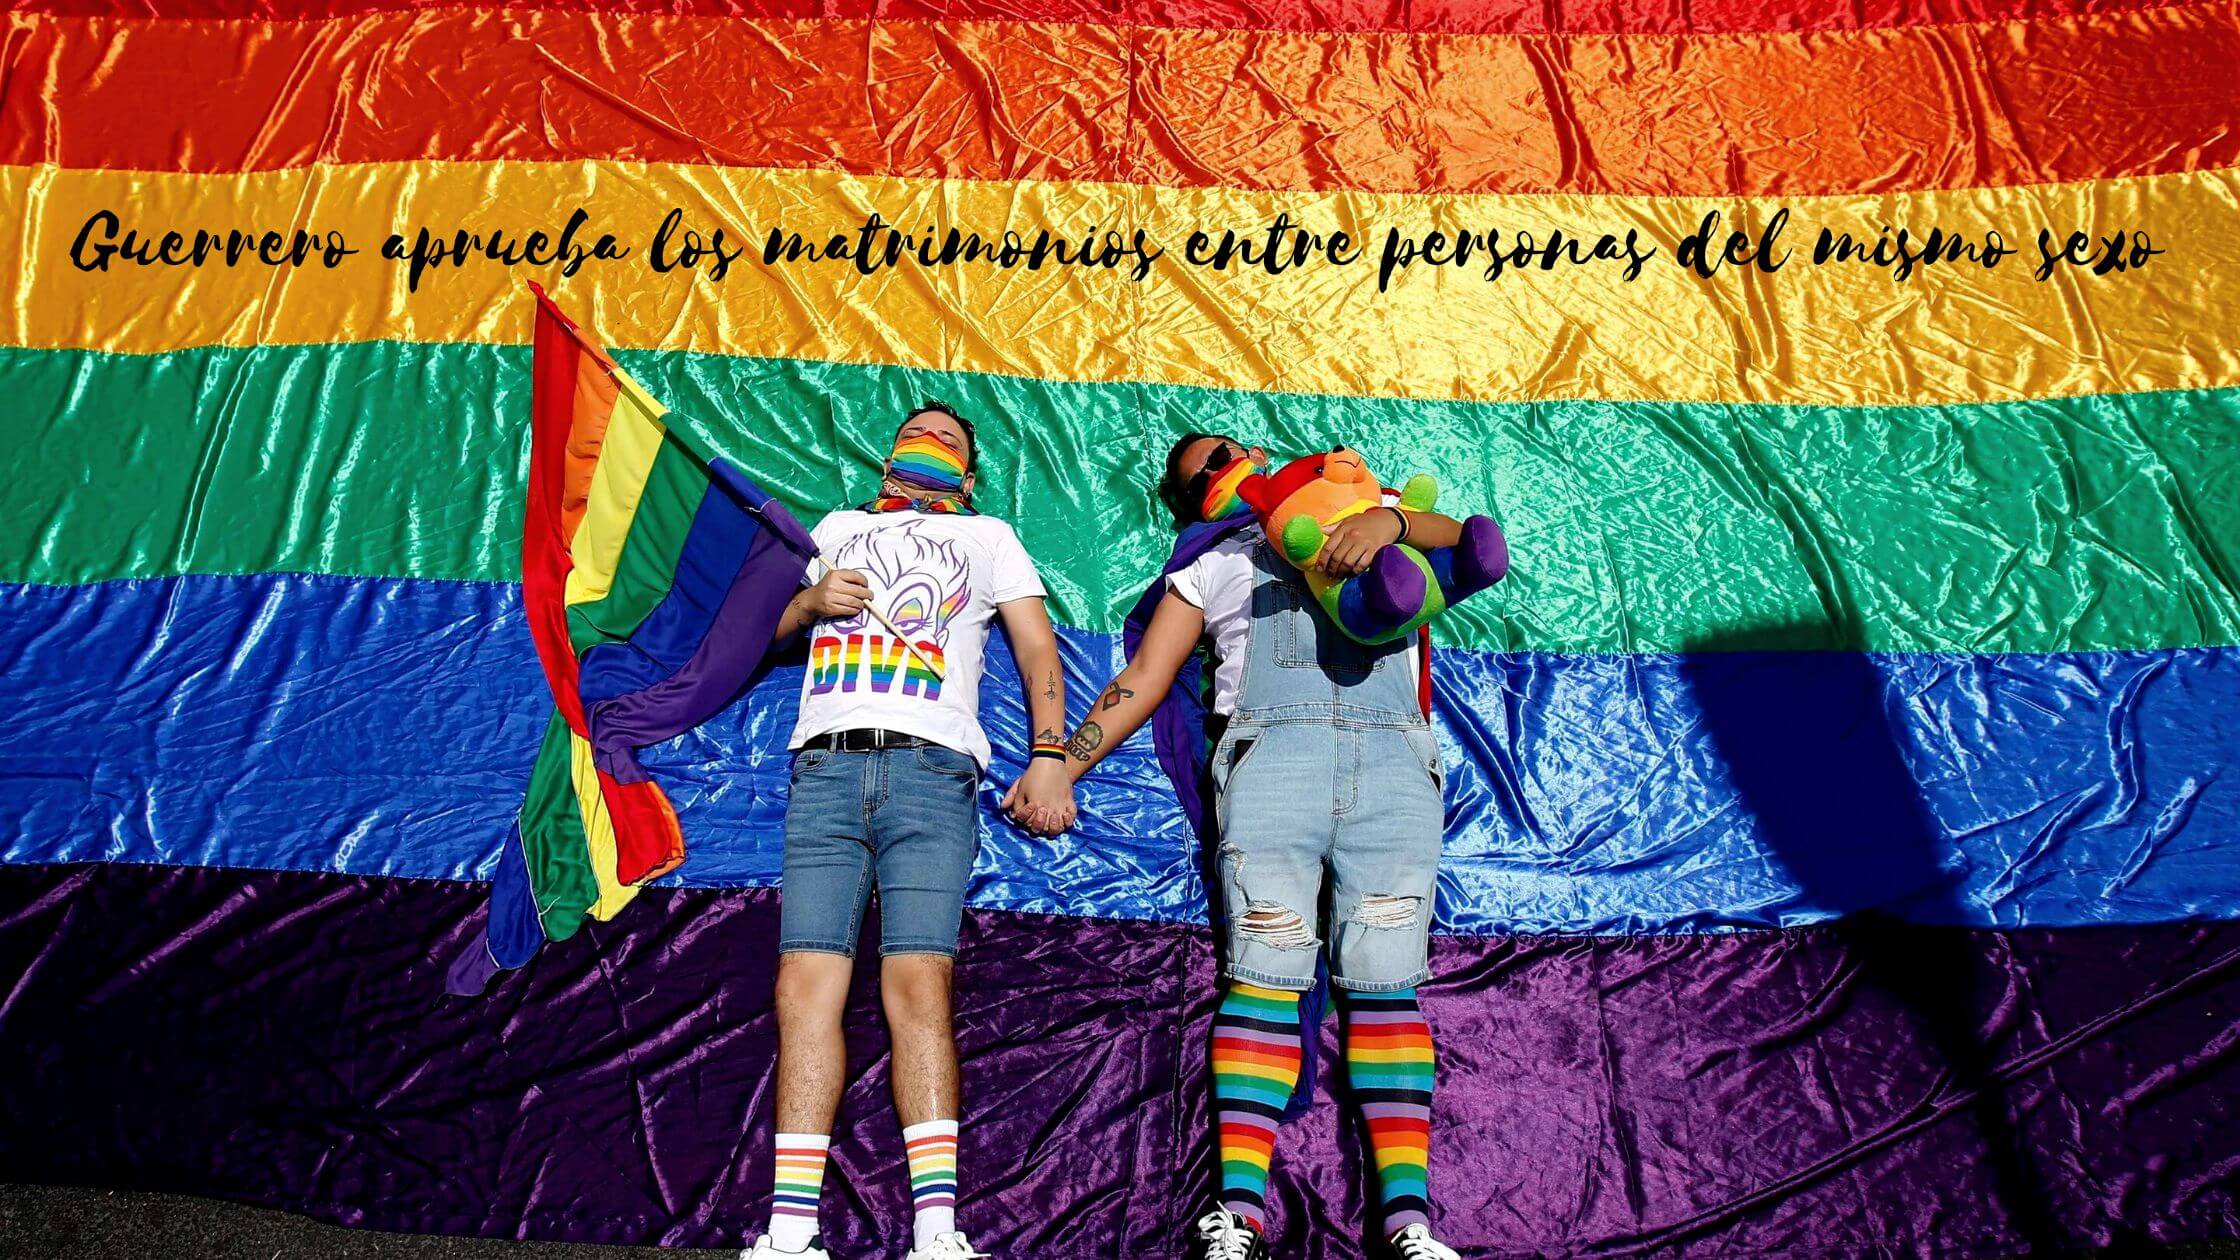 El estado de Guerrero Mexico ya permite el matrimonio entre personas del mismo sexo 2